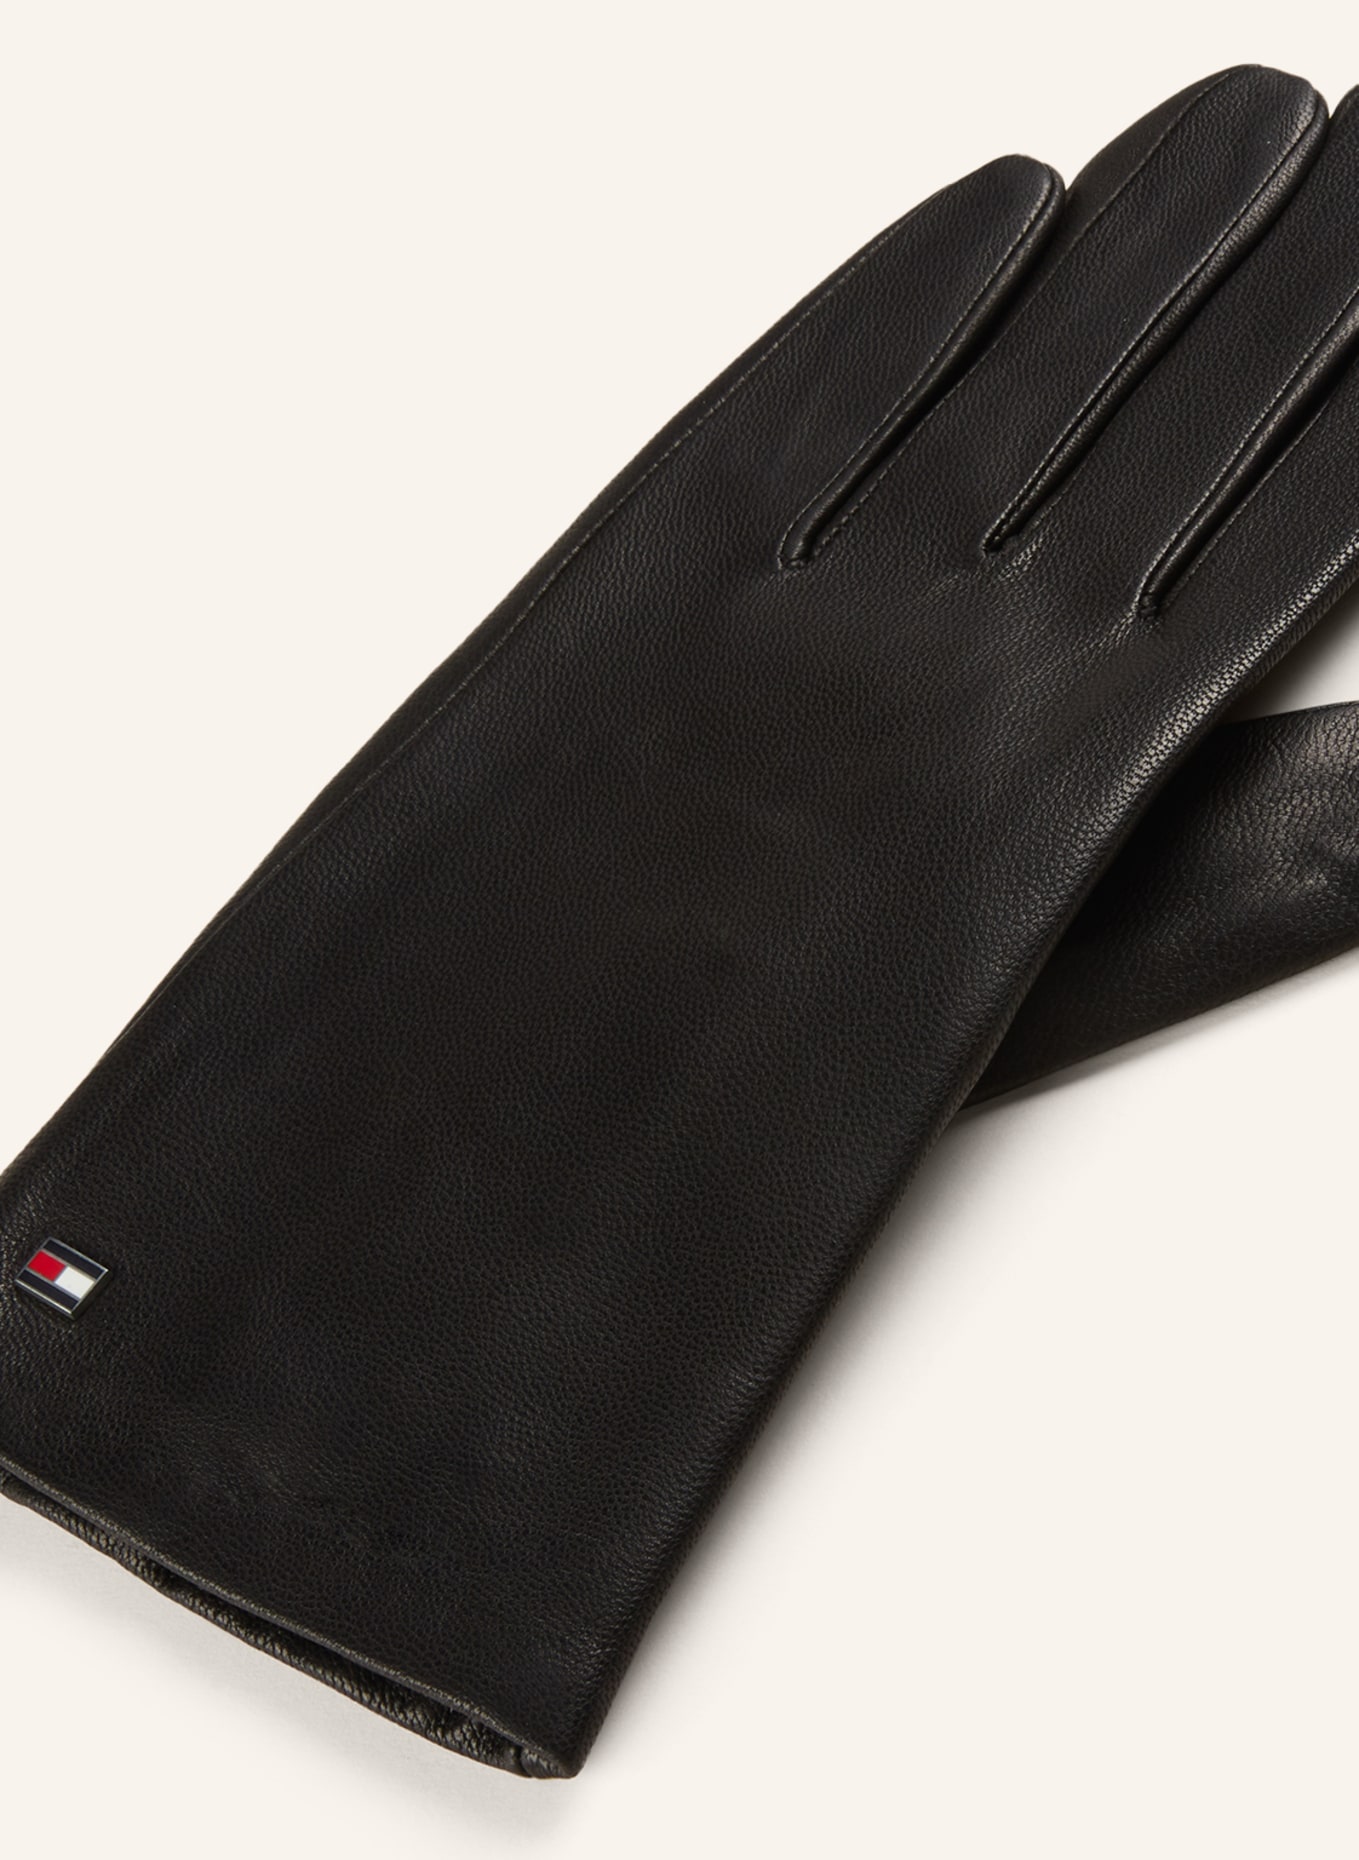 TOMMY HILFIGER Lederhandschuhe mit Touchscreen-Funktion, Farbe: SCHWARZ (Bild 2)